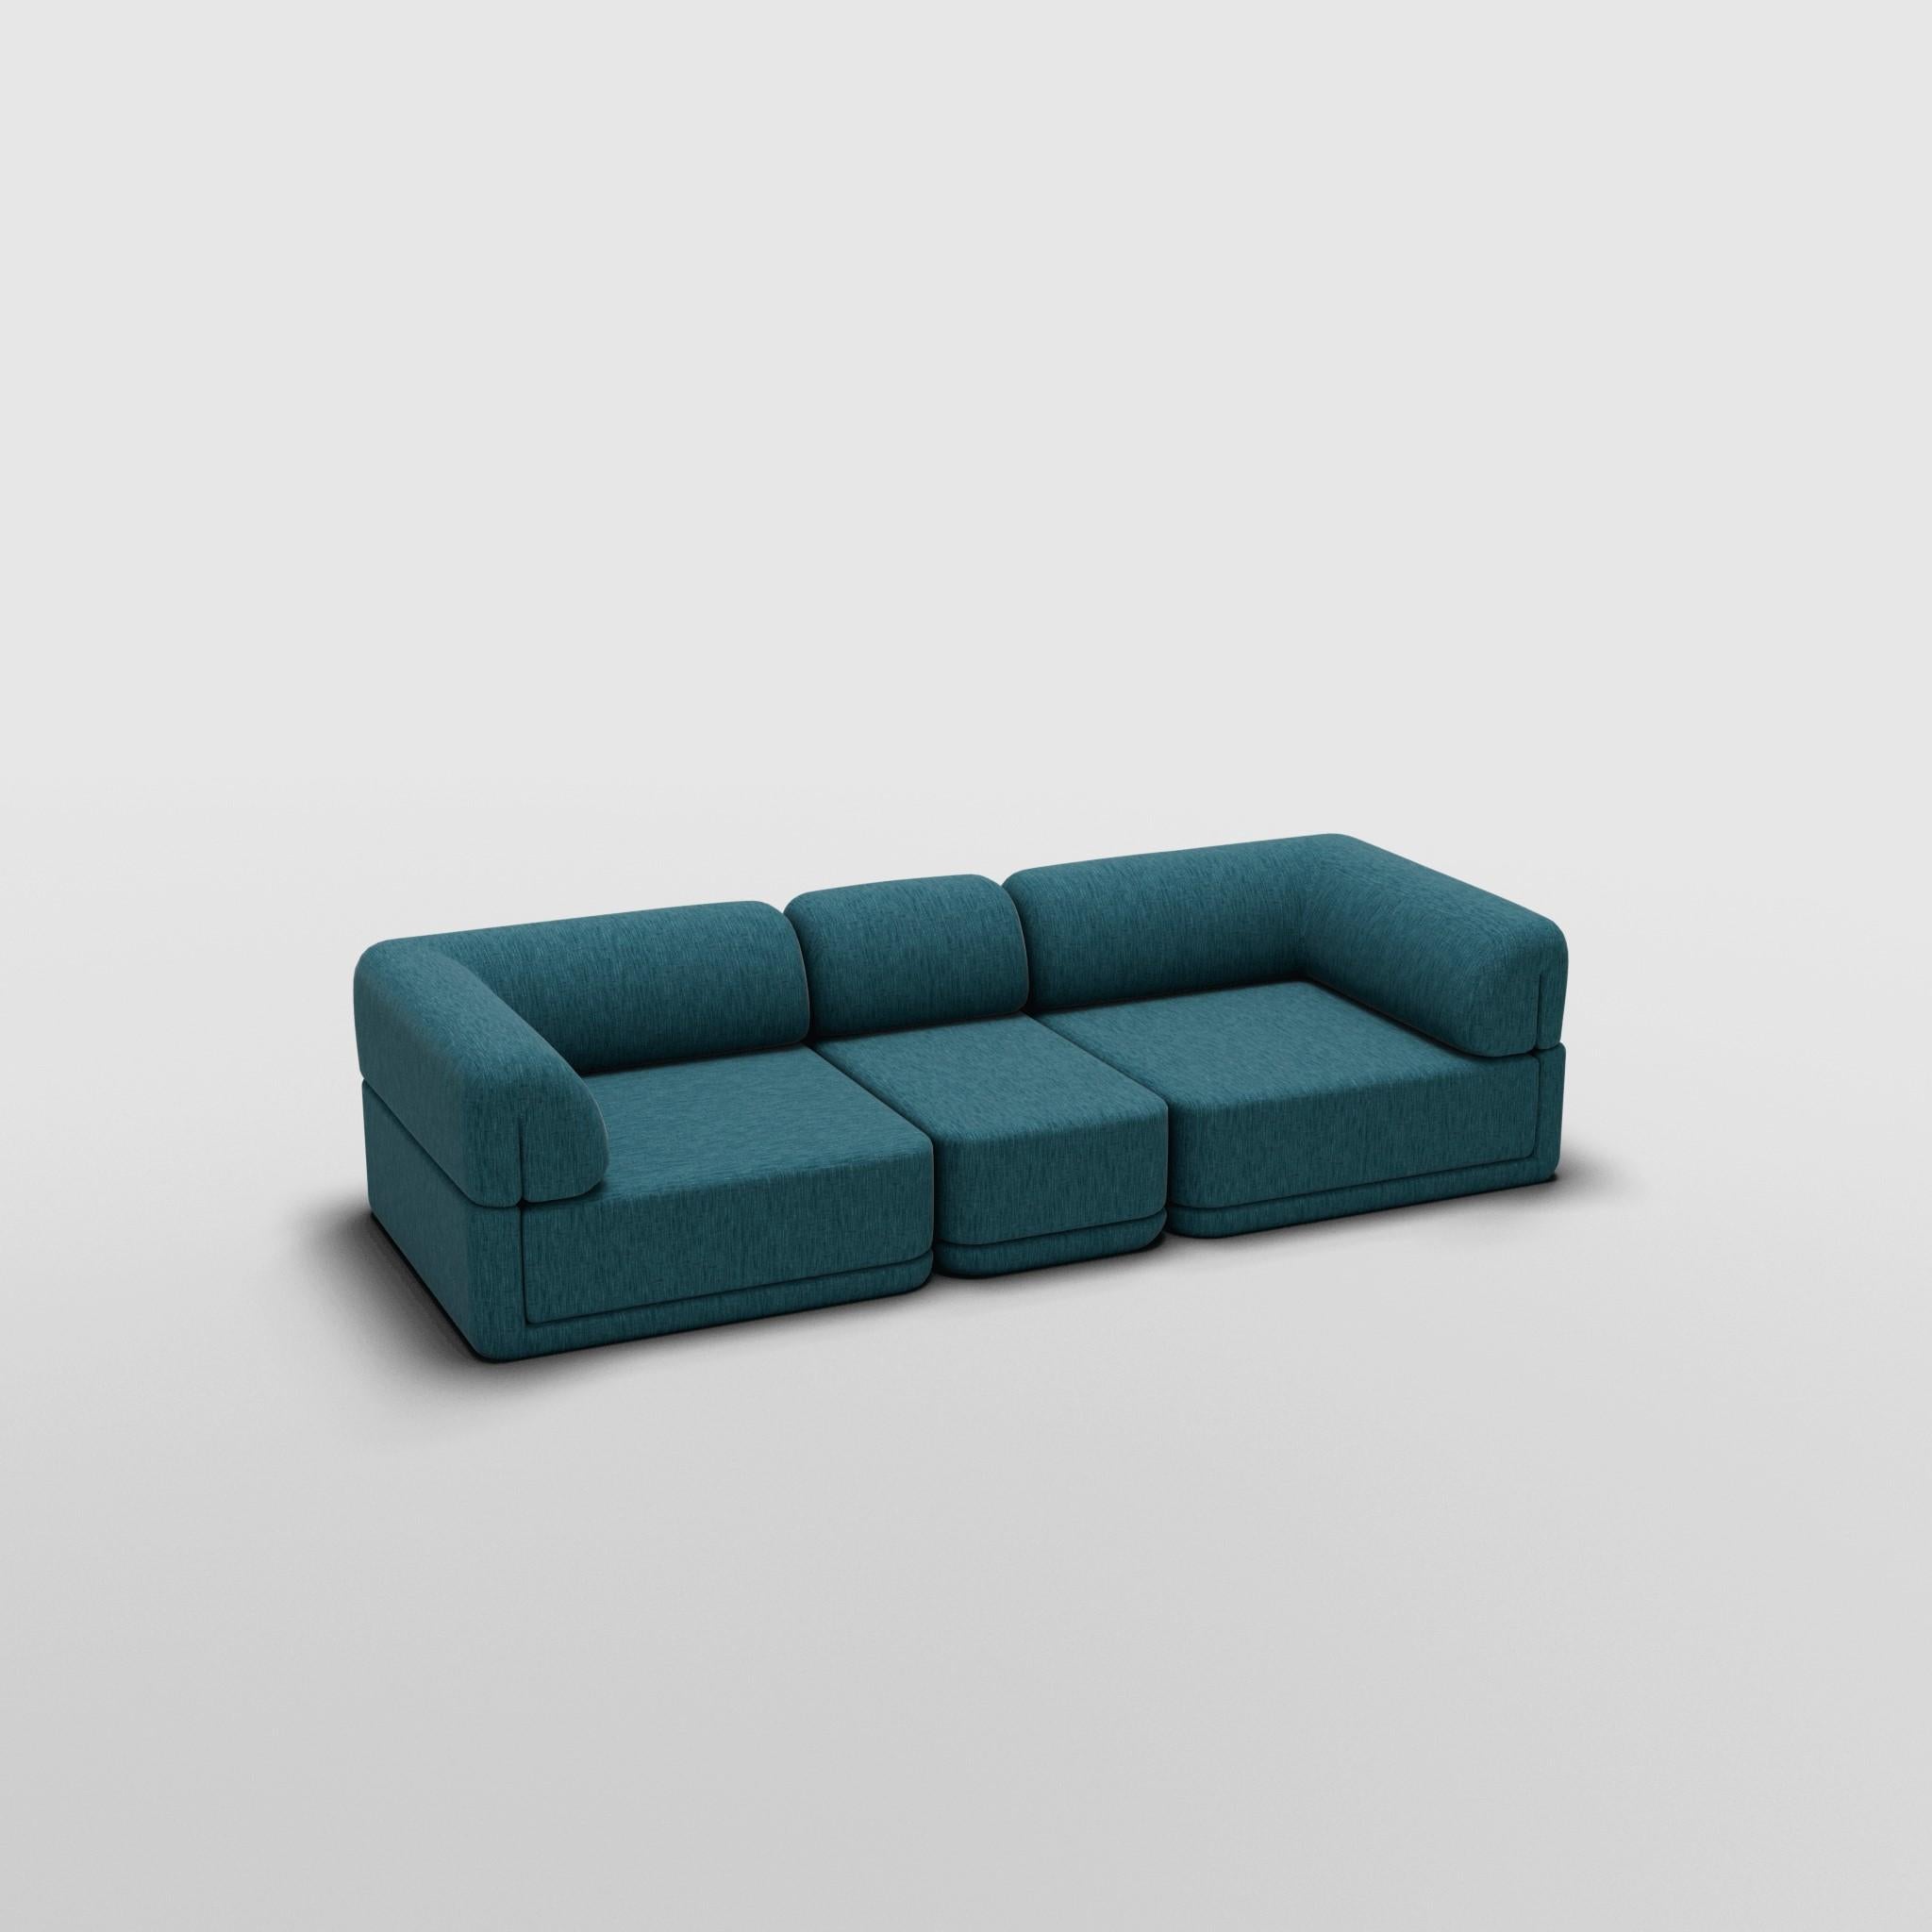 Sofa Slim Set - Inspiriert von italienischen Luxusmöbeln der 70er Jahre

Entdecken Sie das Cube Sofa, wo Kunst auf Anpassungsfähigkeit trifft. Sein skulpturales Design und der individuell anpassbare Komfort schaffen unendliche Möglichkeiten für